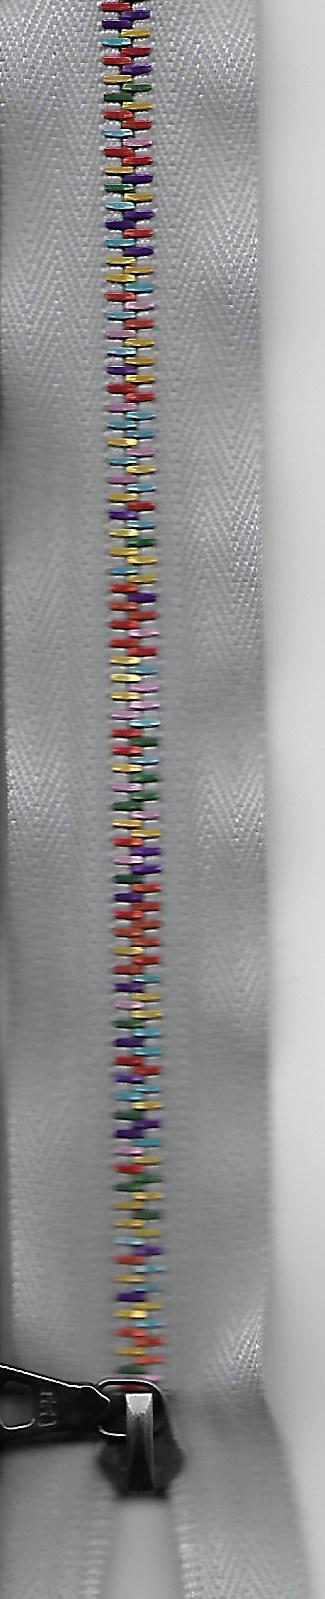 Reissverschluss, Eloxal 6 RIO, teilbar, grau mit pinkigen, orangen, goldigen, türkisen, dunkelgrünen und violetten Zacken, Col. 2102 80cm